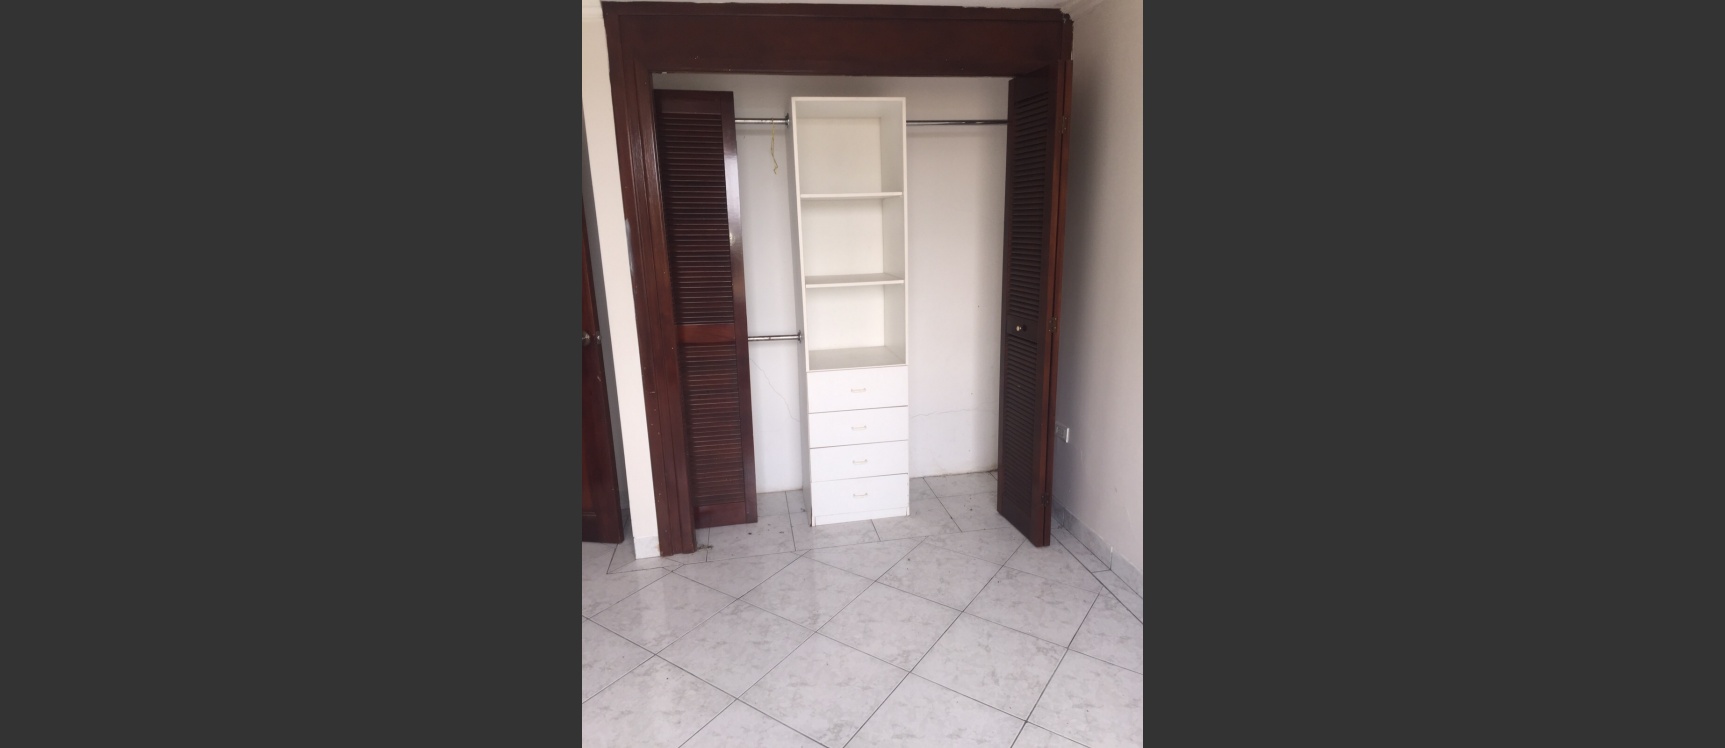 GeoBienes - Casa de oportunidad de venta en Ceibos Norte Guayaquil Ecuador - Plusvalia Guayaquil Casas de venta y alquiler Inmobiliaria Ecuador